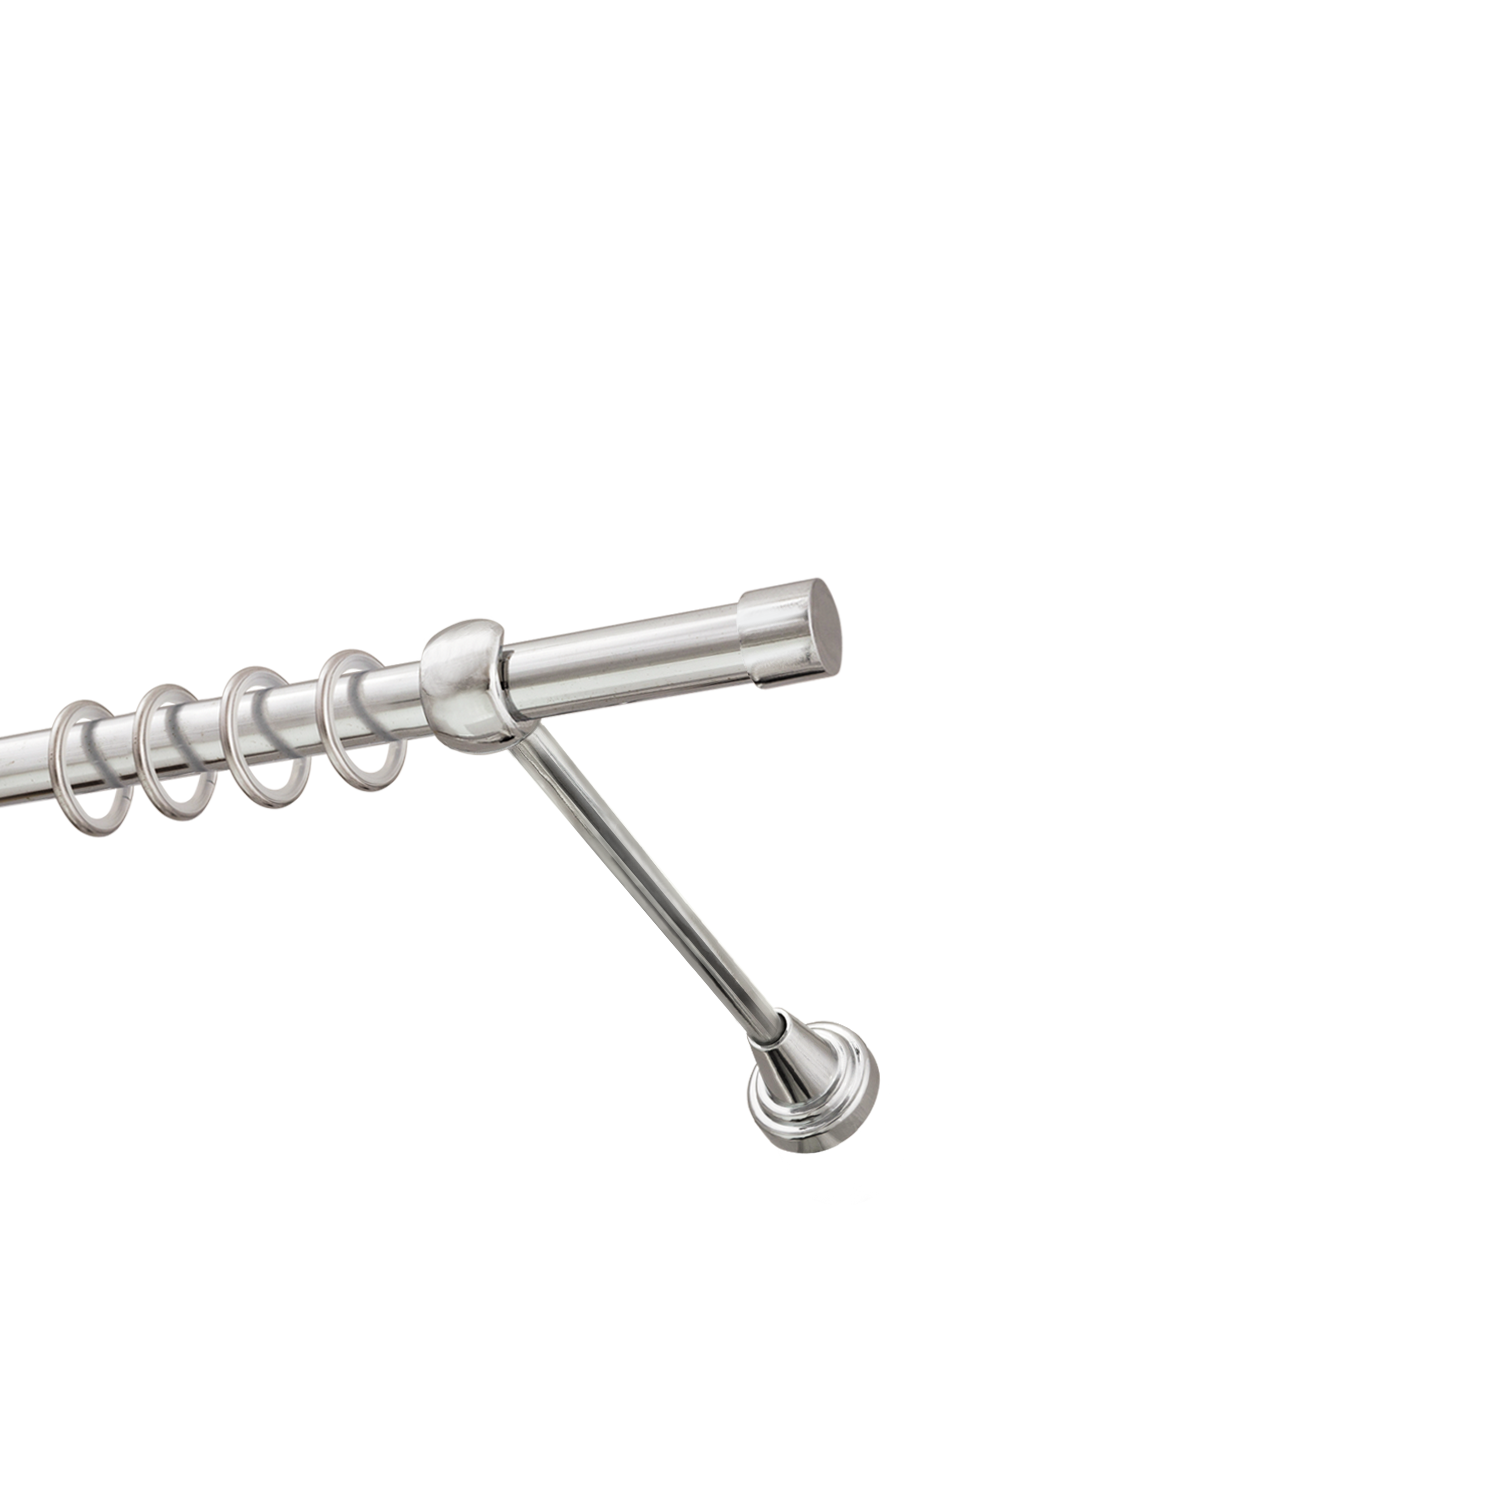 Металлический карниз для штор Заглушка, однорядный 16 мм, серебро, гладкая штанга, длина 300 см - фото Wikidecor.ru